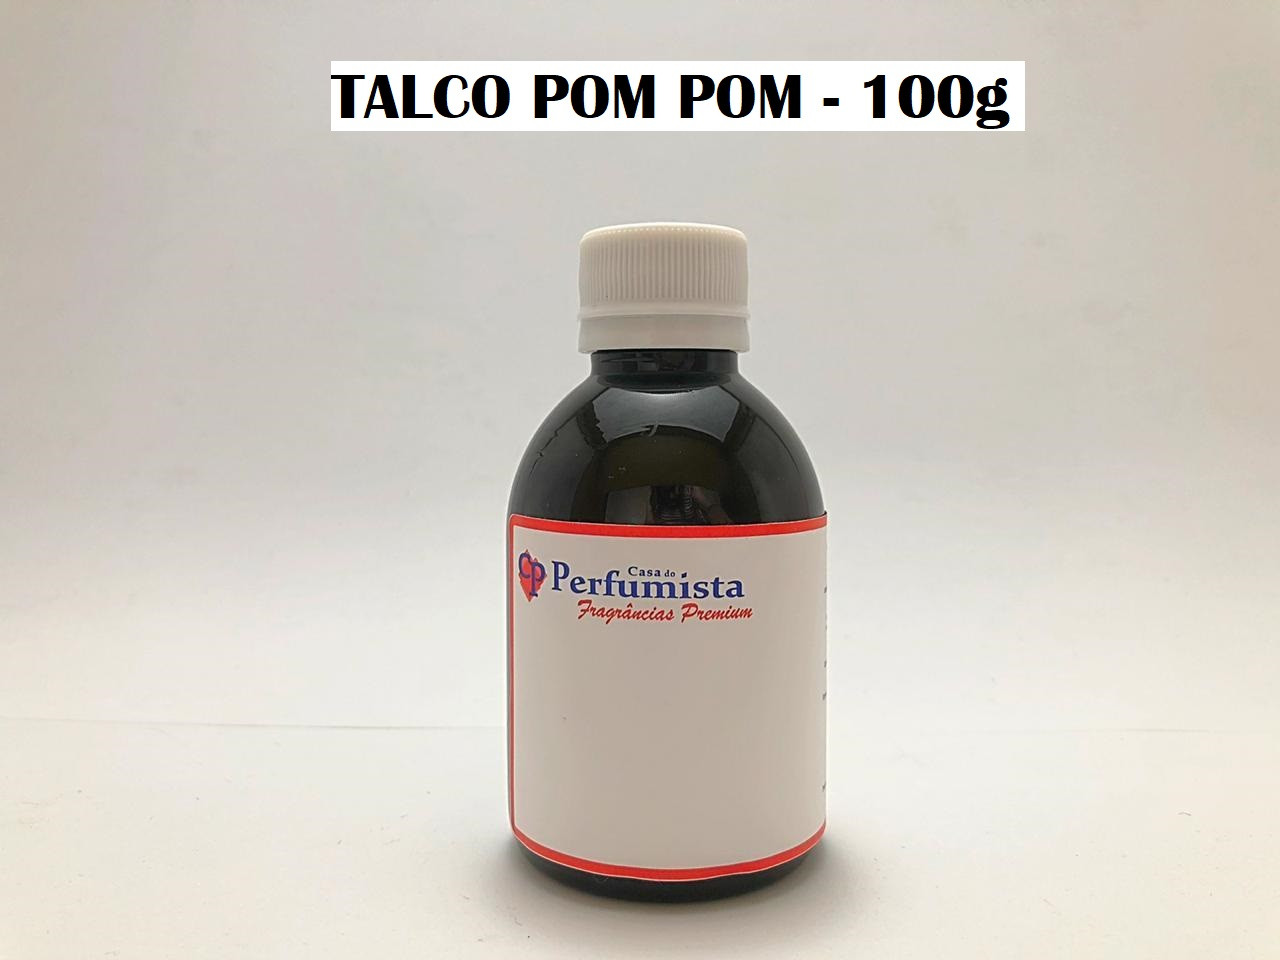 TALCO POM POM - 100g